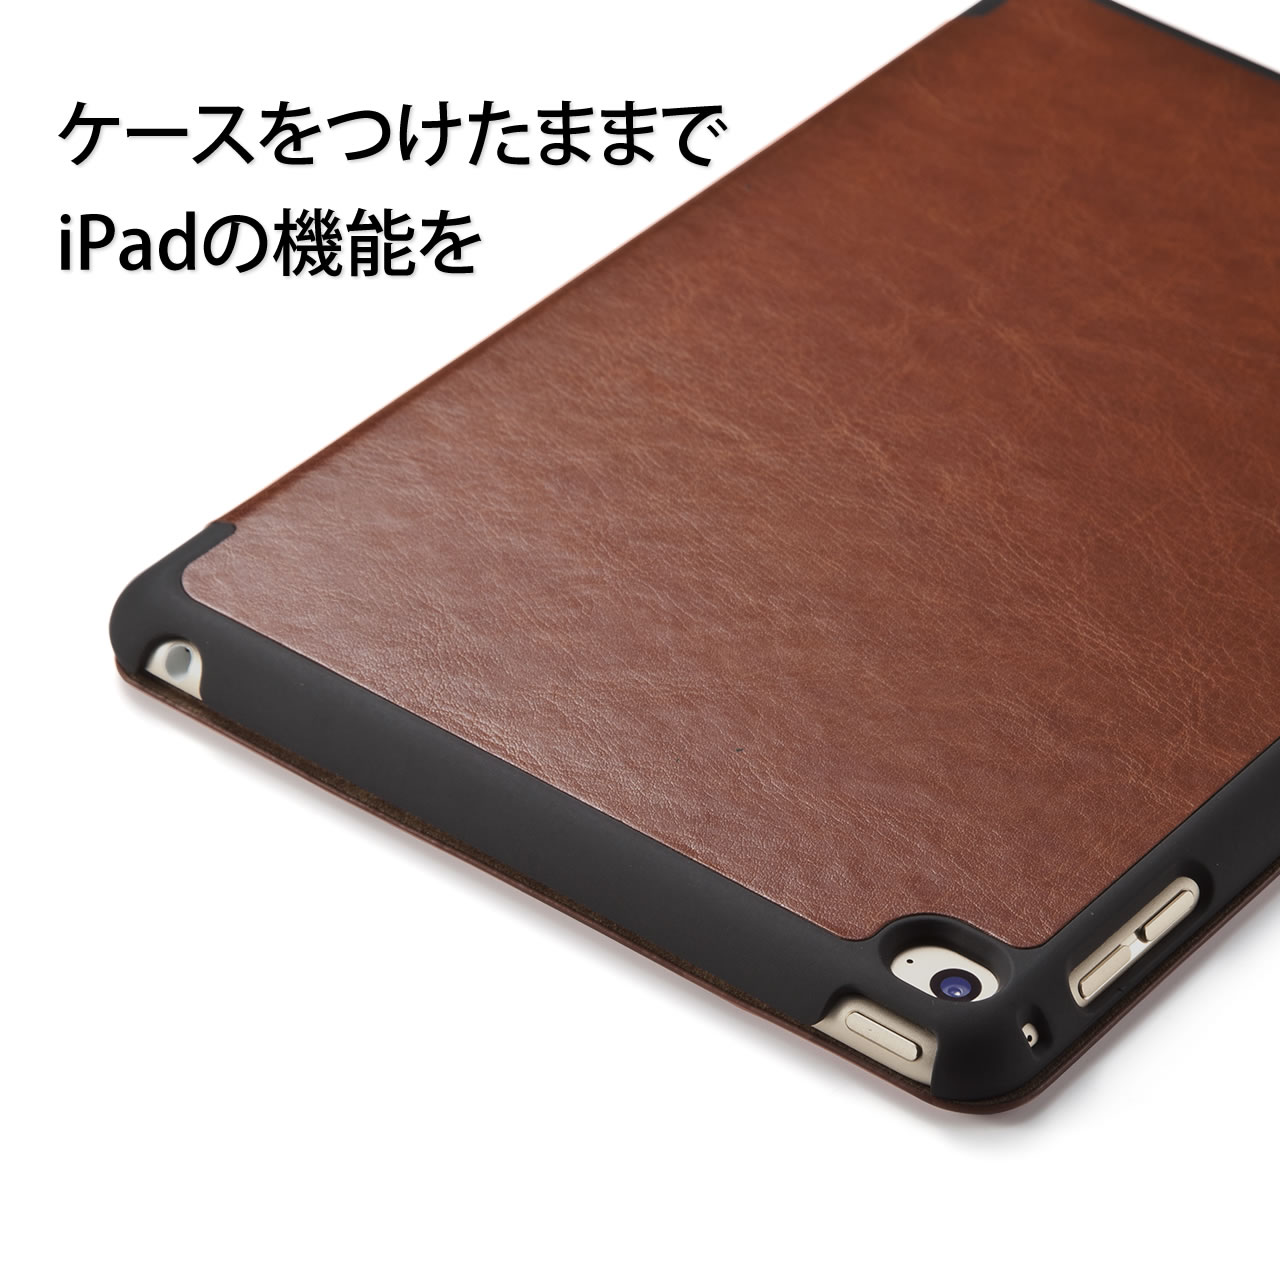 iPad mini 4\tgU[P[XiX^h@\Ebhj 200-TABC005R